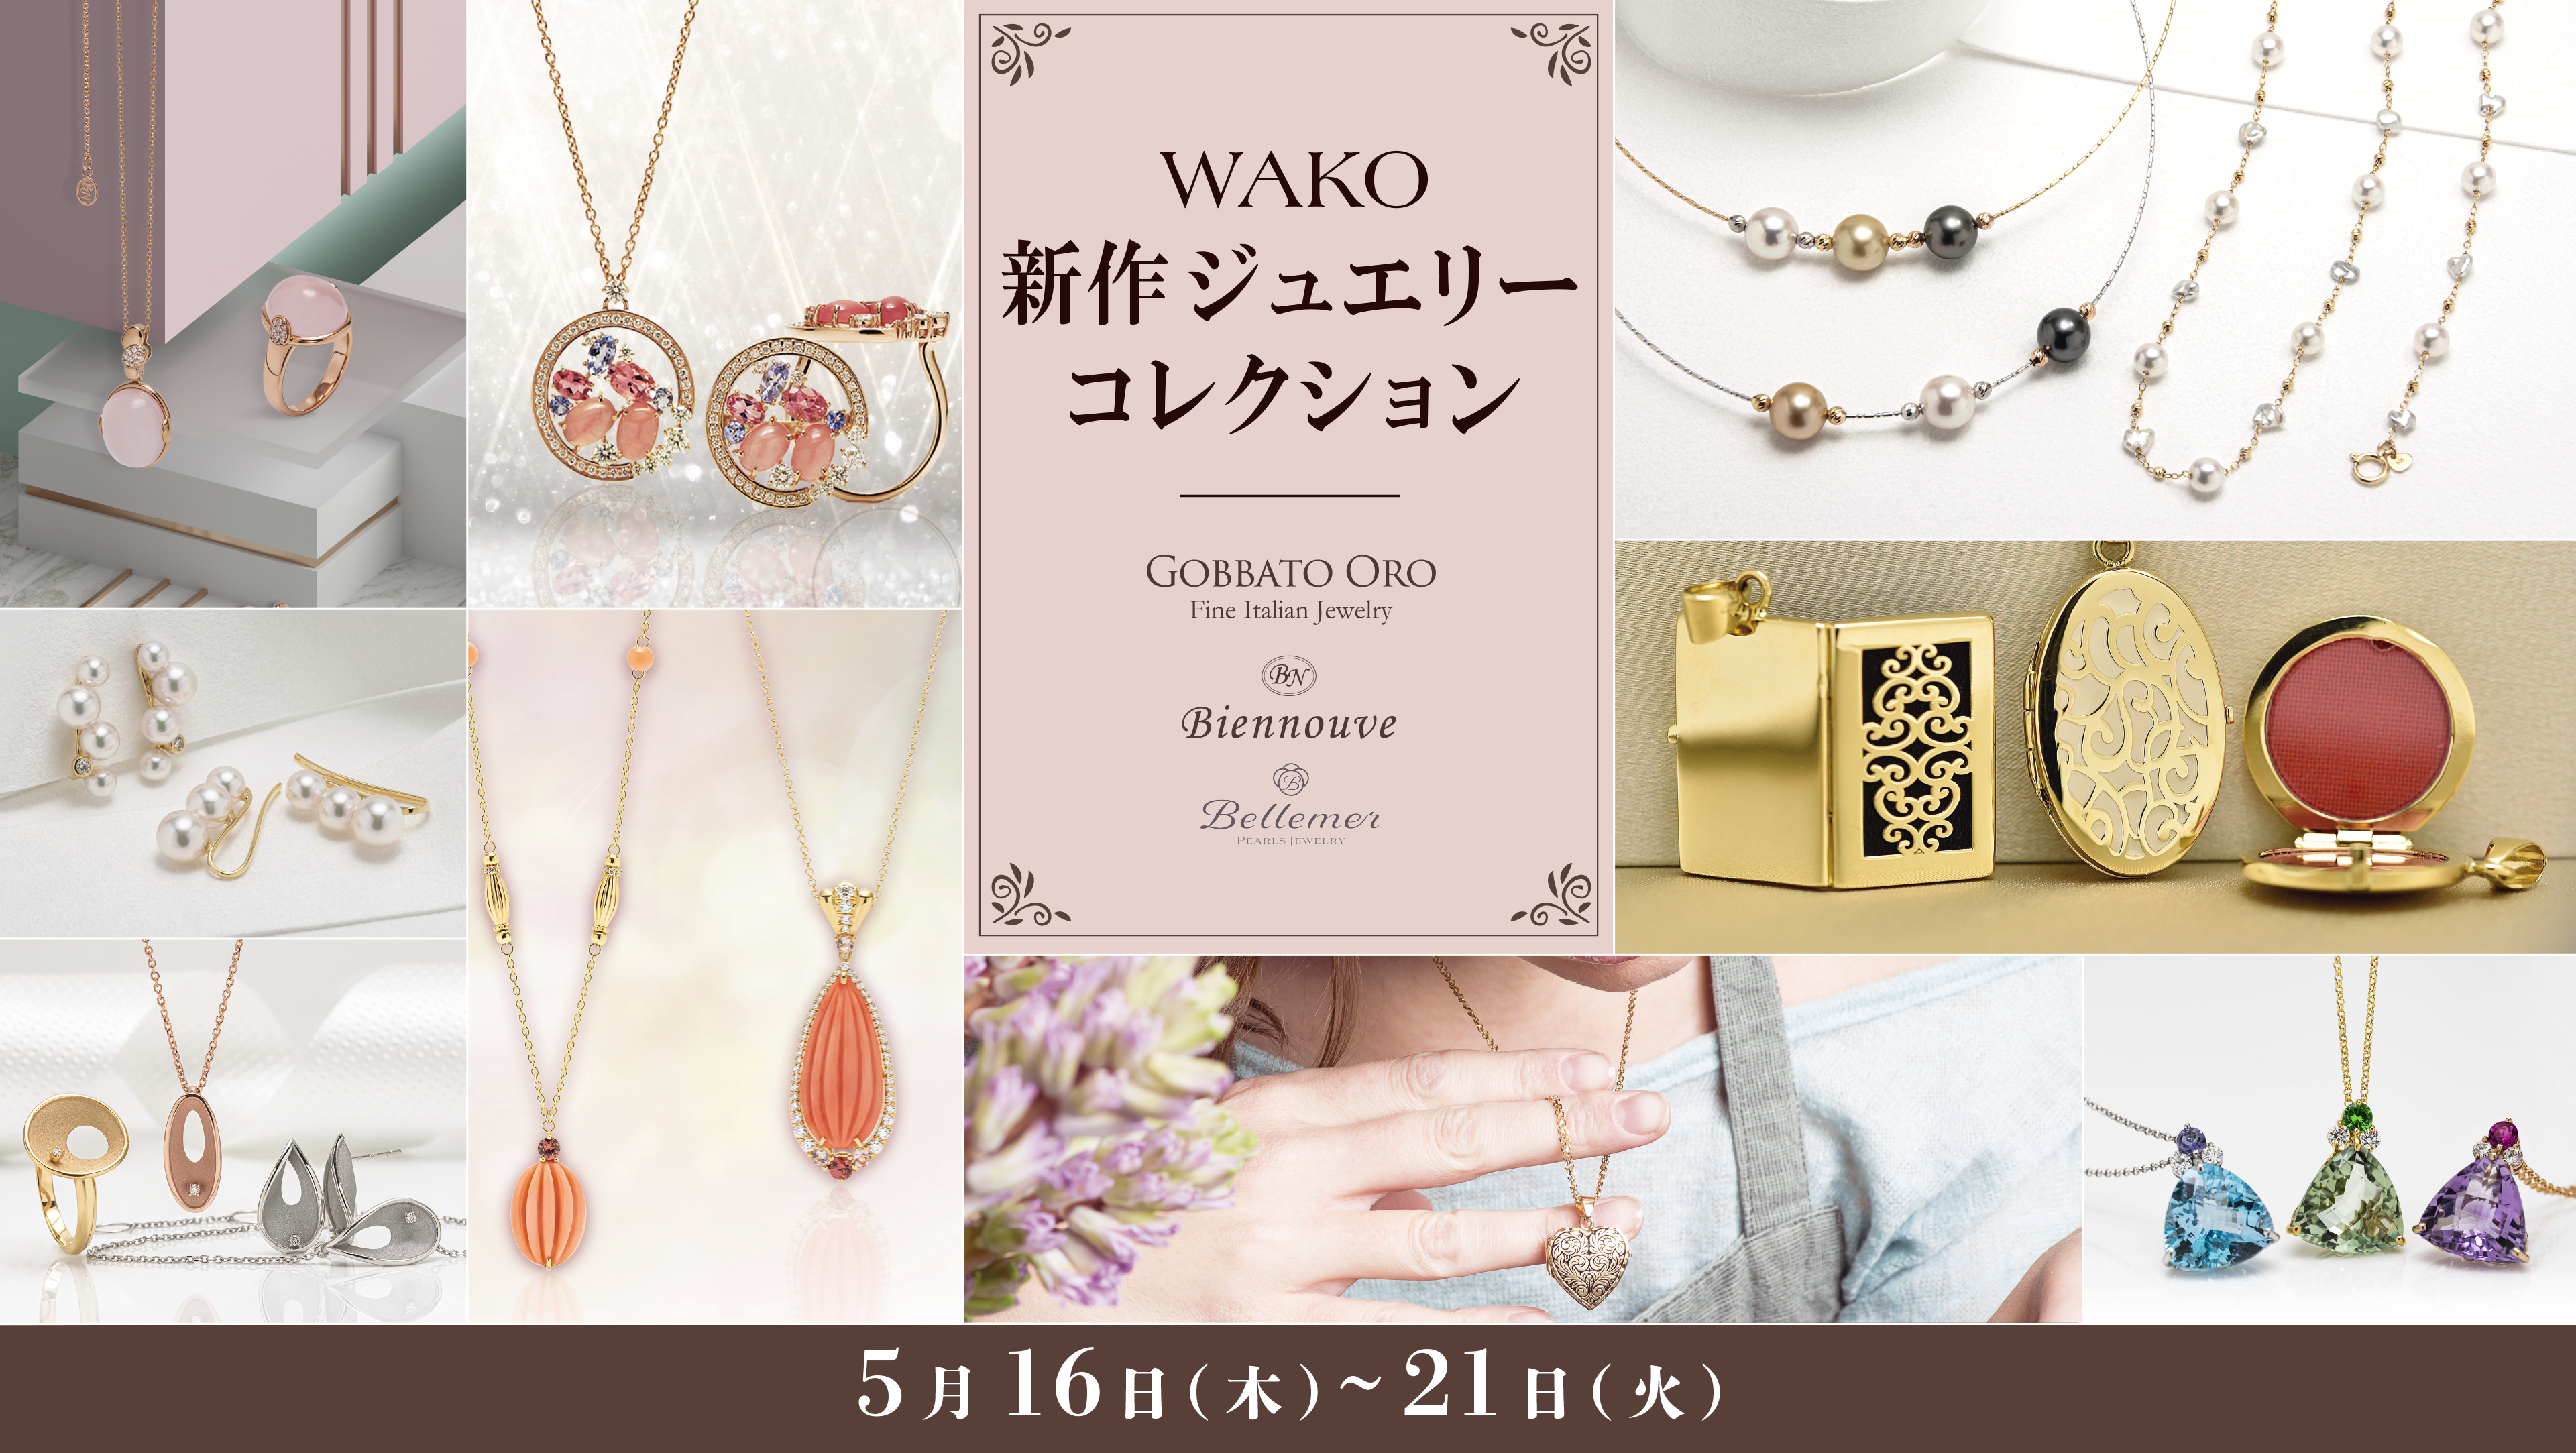 【本通店】WAKO新作ジュエリーコレクション開催